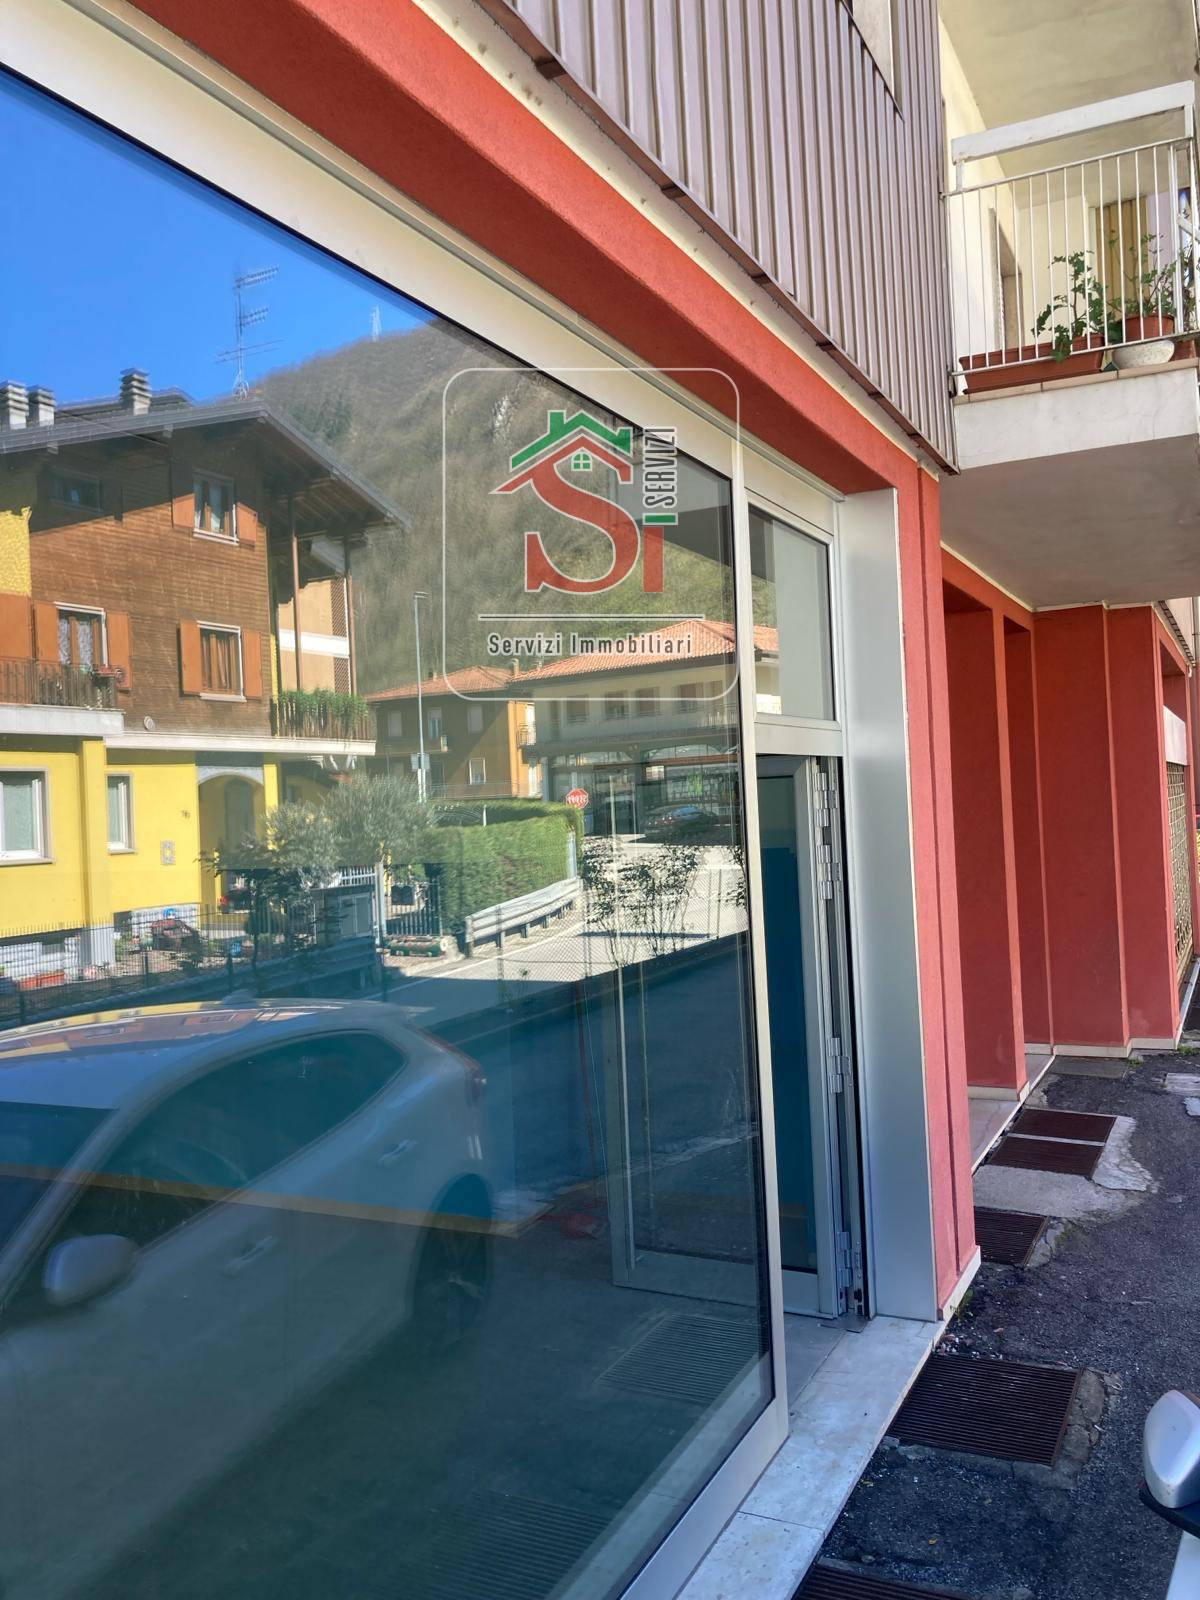 Negozio / Locale in affitto a San Pellegrino Terme, 9999 locali, prezzo € 550 | PortaleAgenzieImmobiliari.it